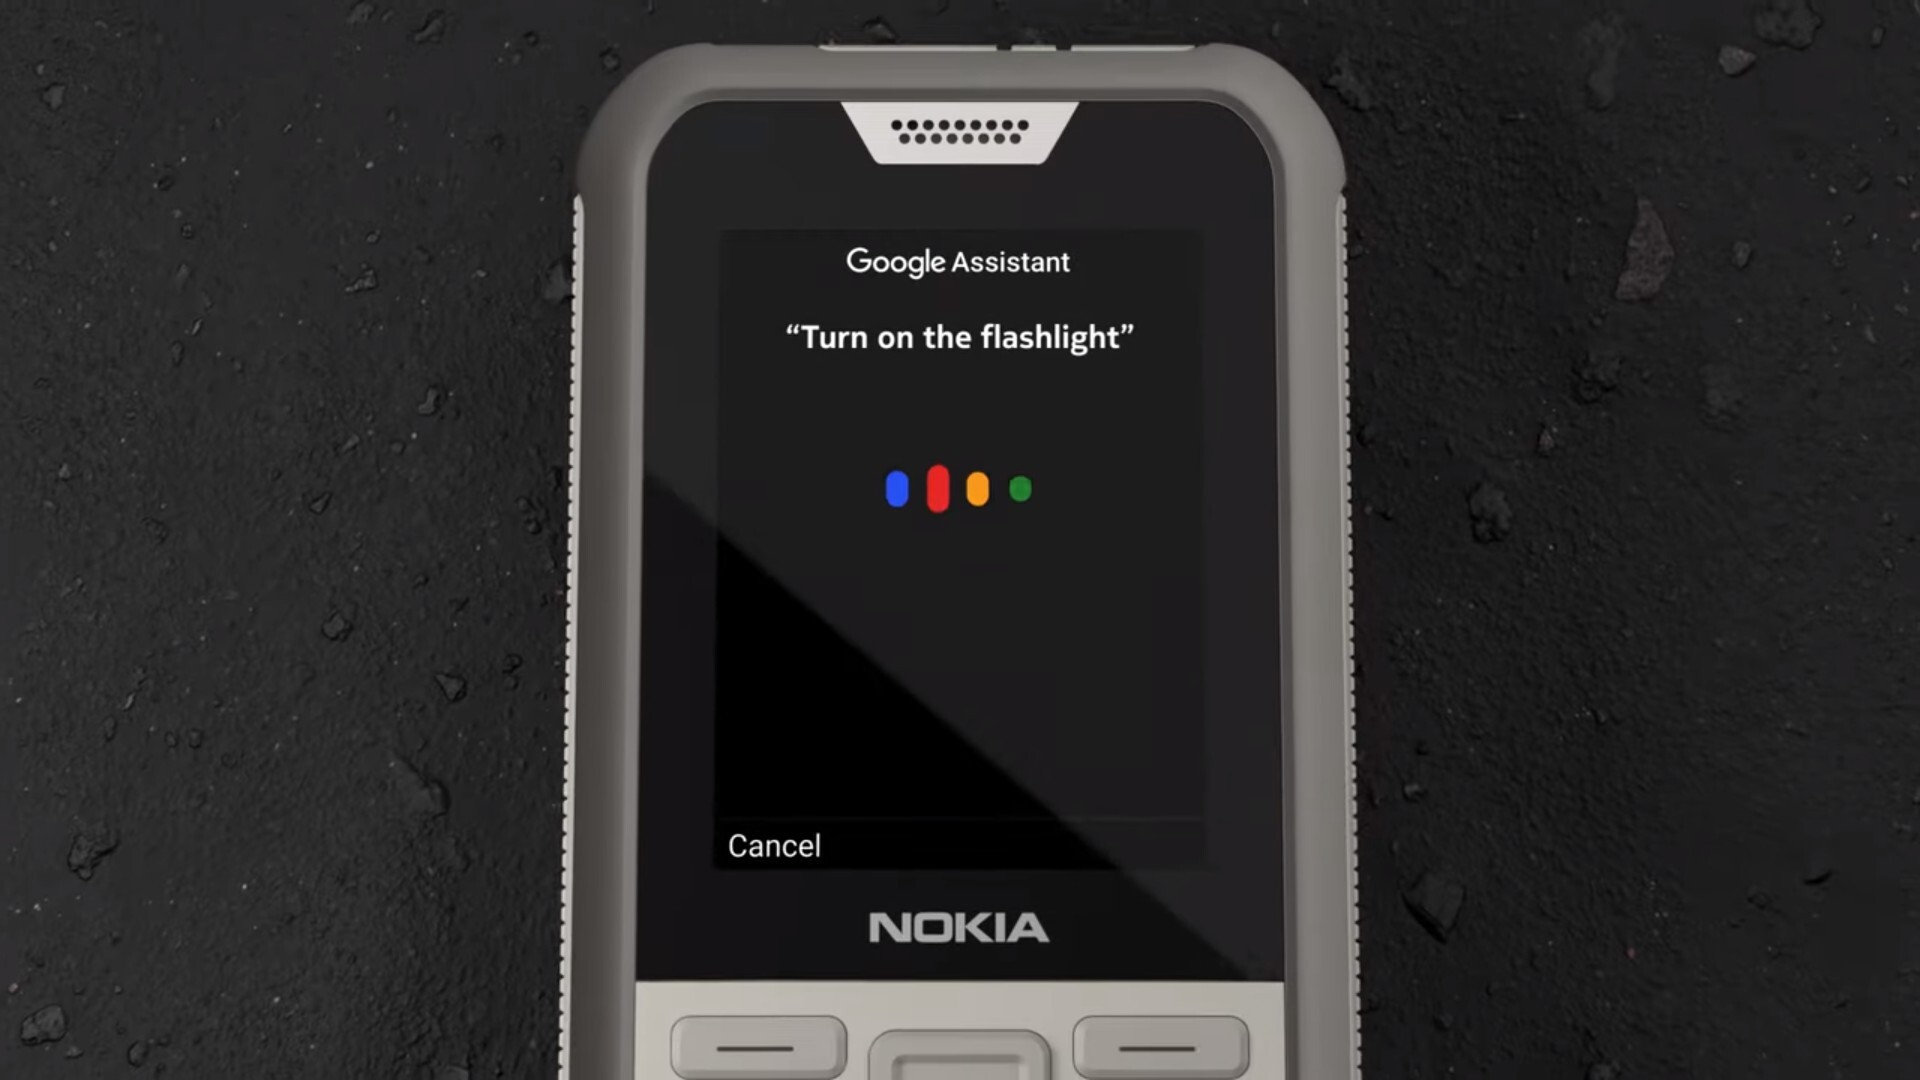 Nokia lanza un nuevo teléfono de concha con WhatsApp y Google Maps